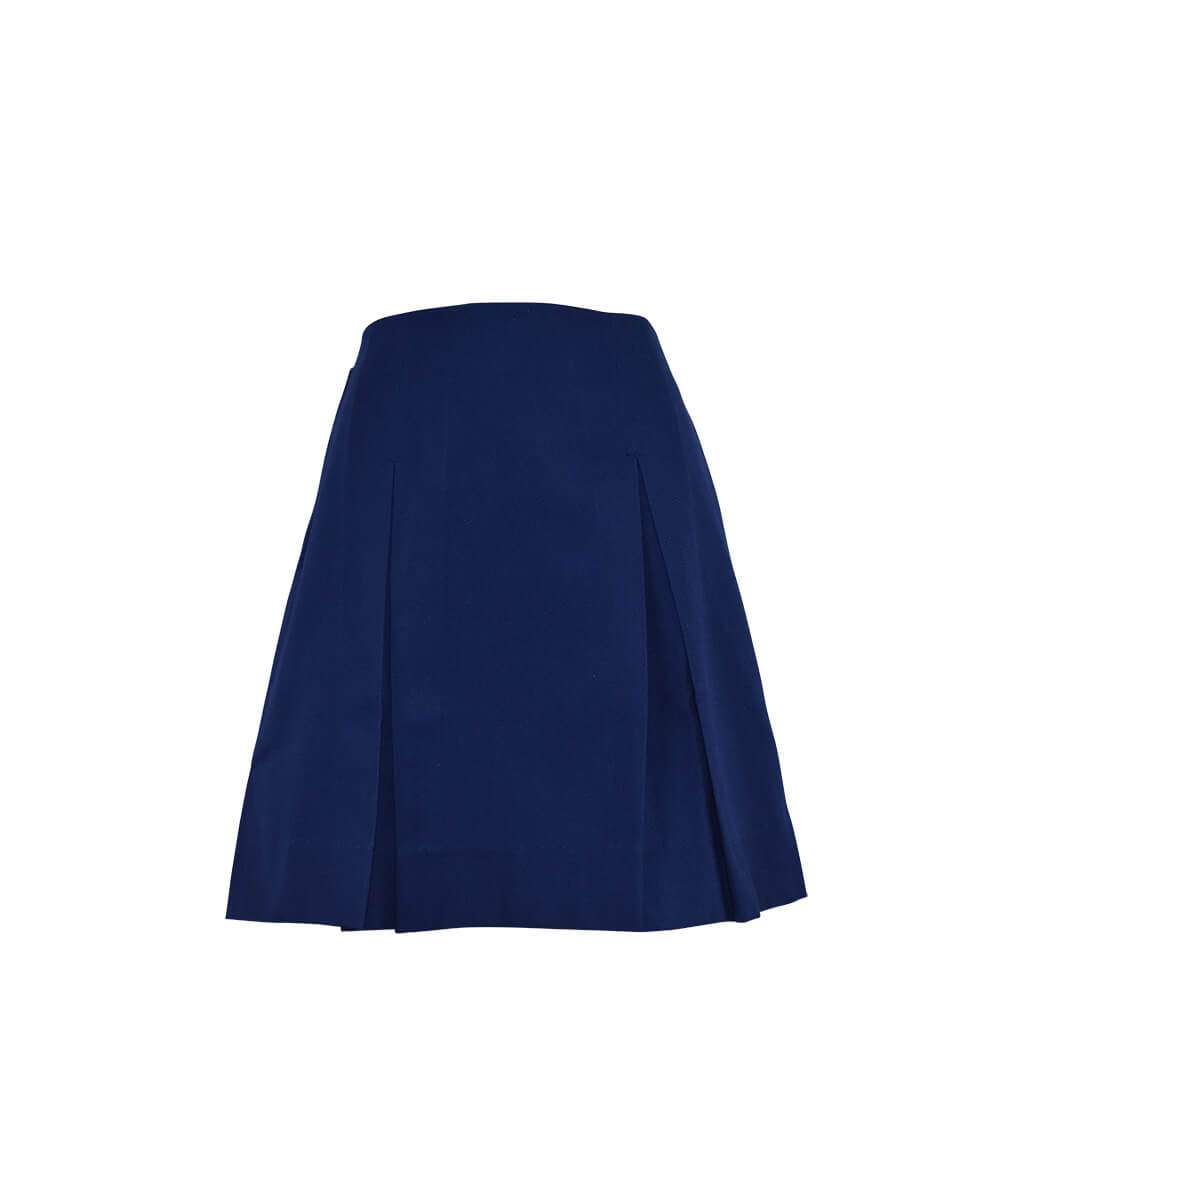 Willoughby Girls Senior Skirt | Willoughby Girls High School | Noone